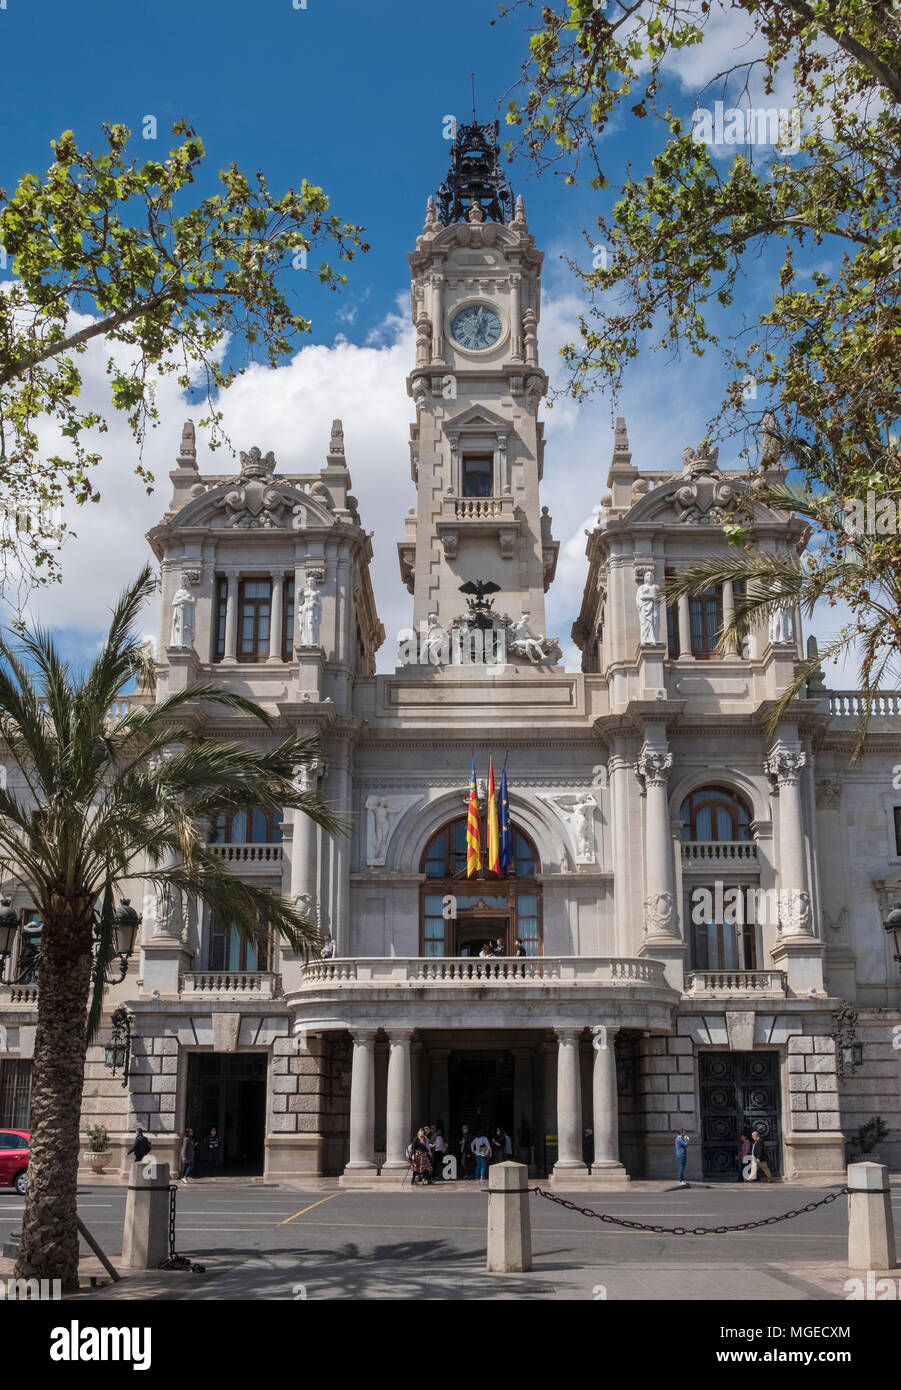 Front facade of Ayuntamiento de Valencia (City Town Hall), Plaza del Ayuntamiento, Valencia, Spain. Stock Photo